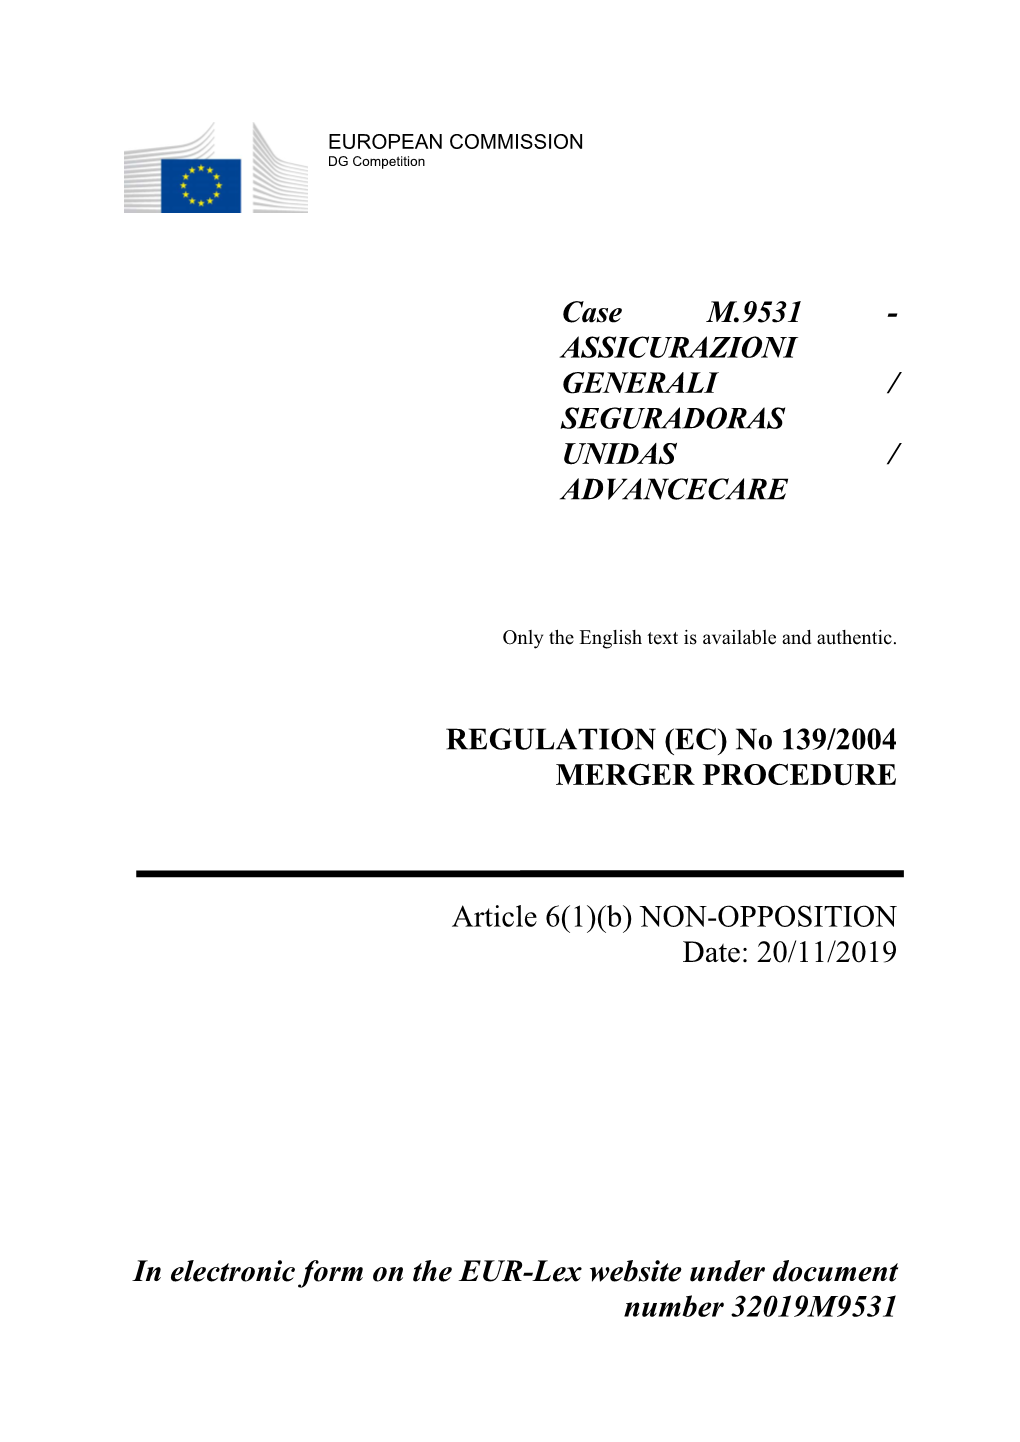 Case M.9531 - ASSICURAZIONI GENERALI / SEGURADORAS UNIDAS / ADVANCECARE